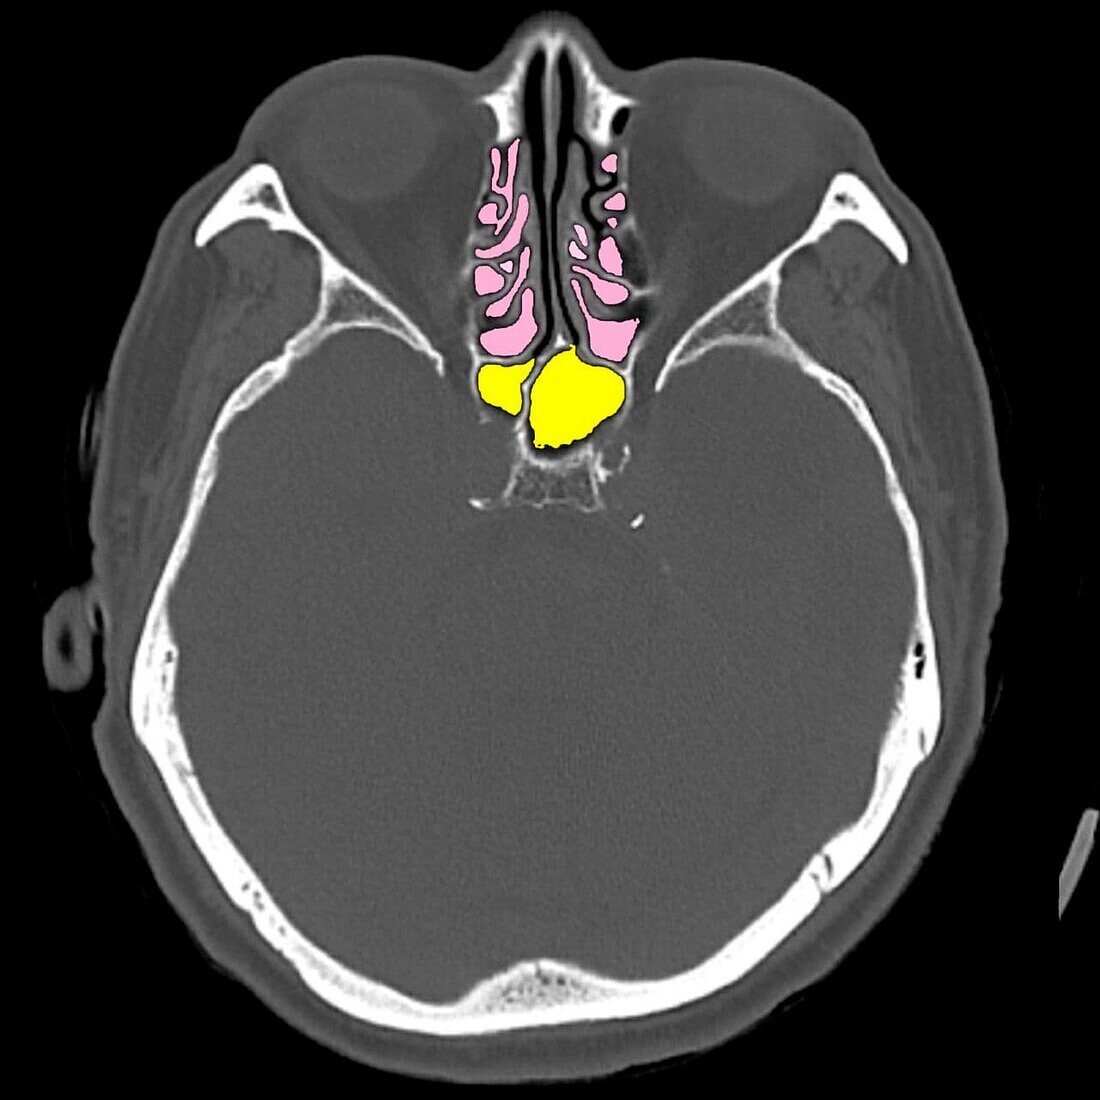 Paranasal sinus anatomy, CT scan